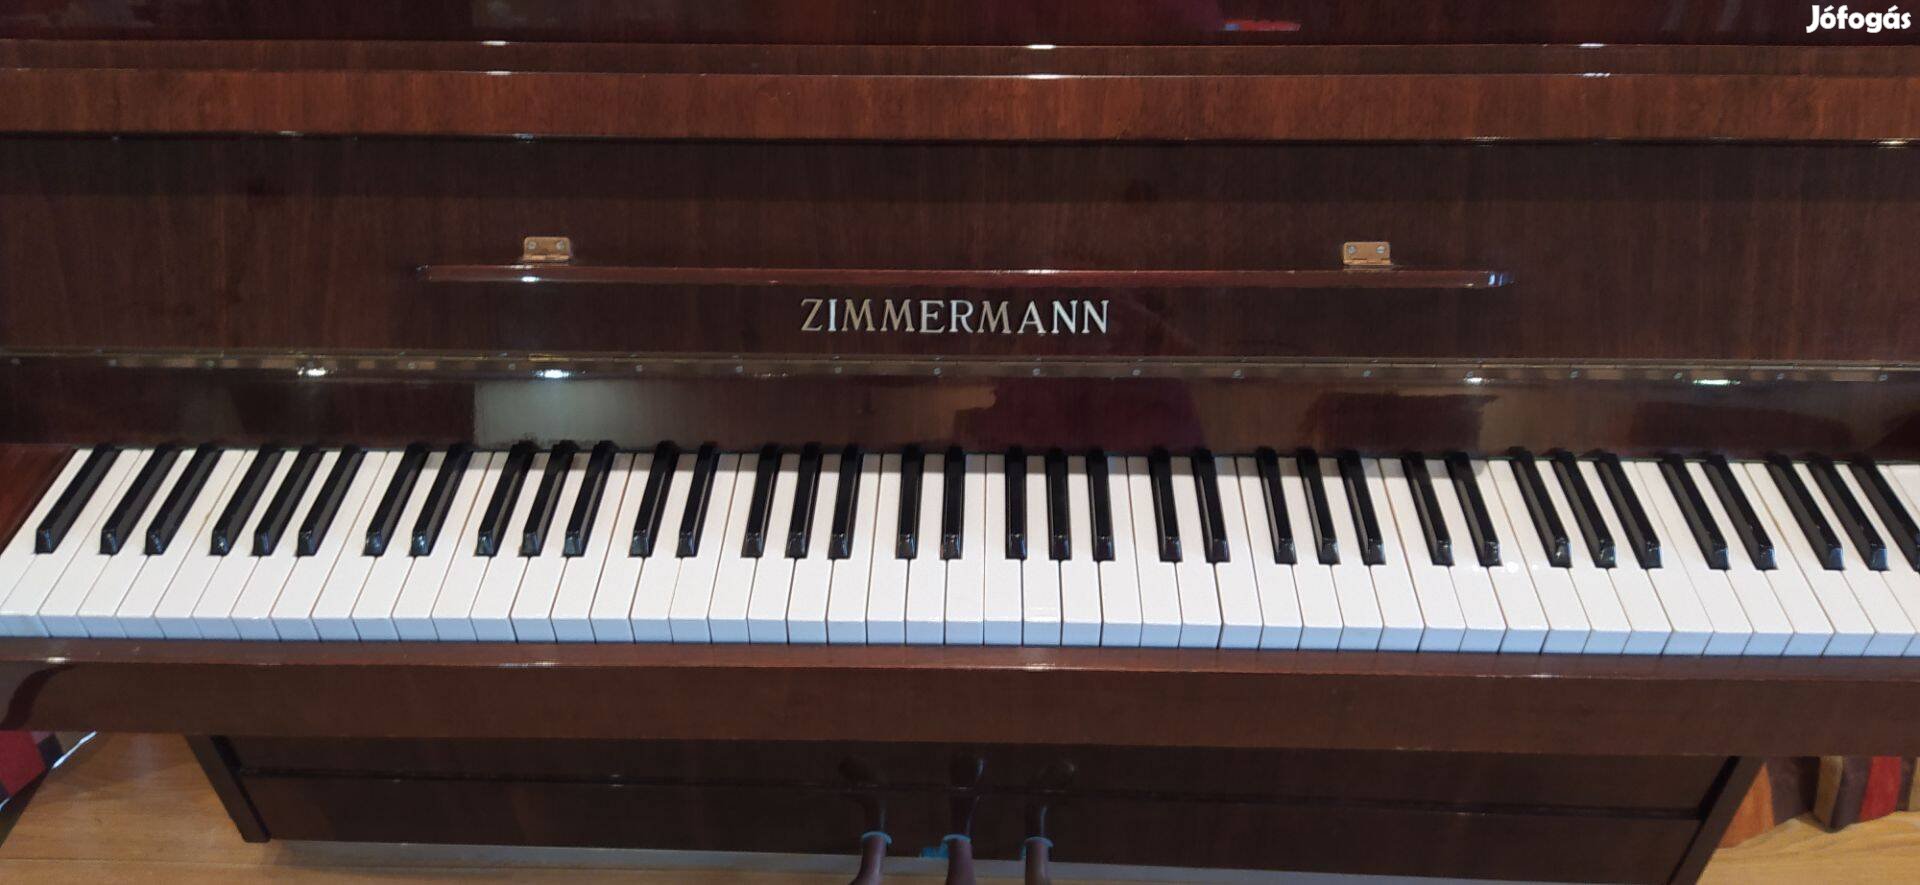 Zimmermann pianino